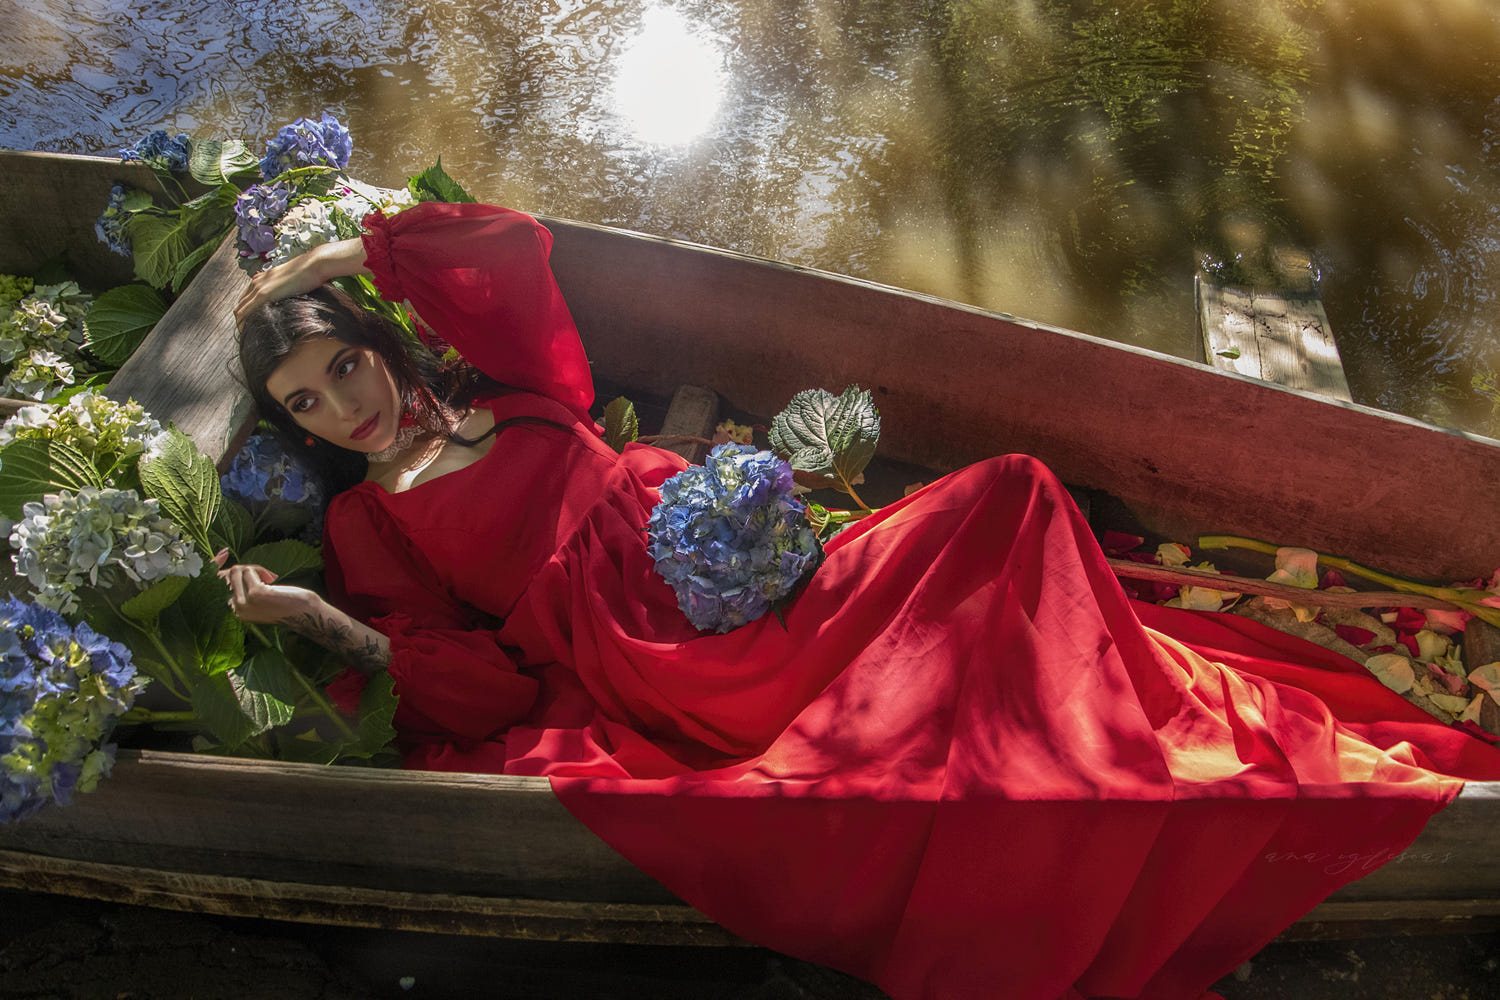 Фото Девушка в длинном красном платье, с голубыми цветами лежит в лодке